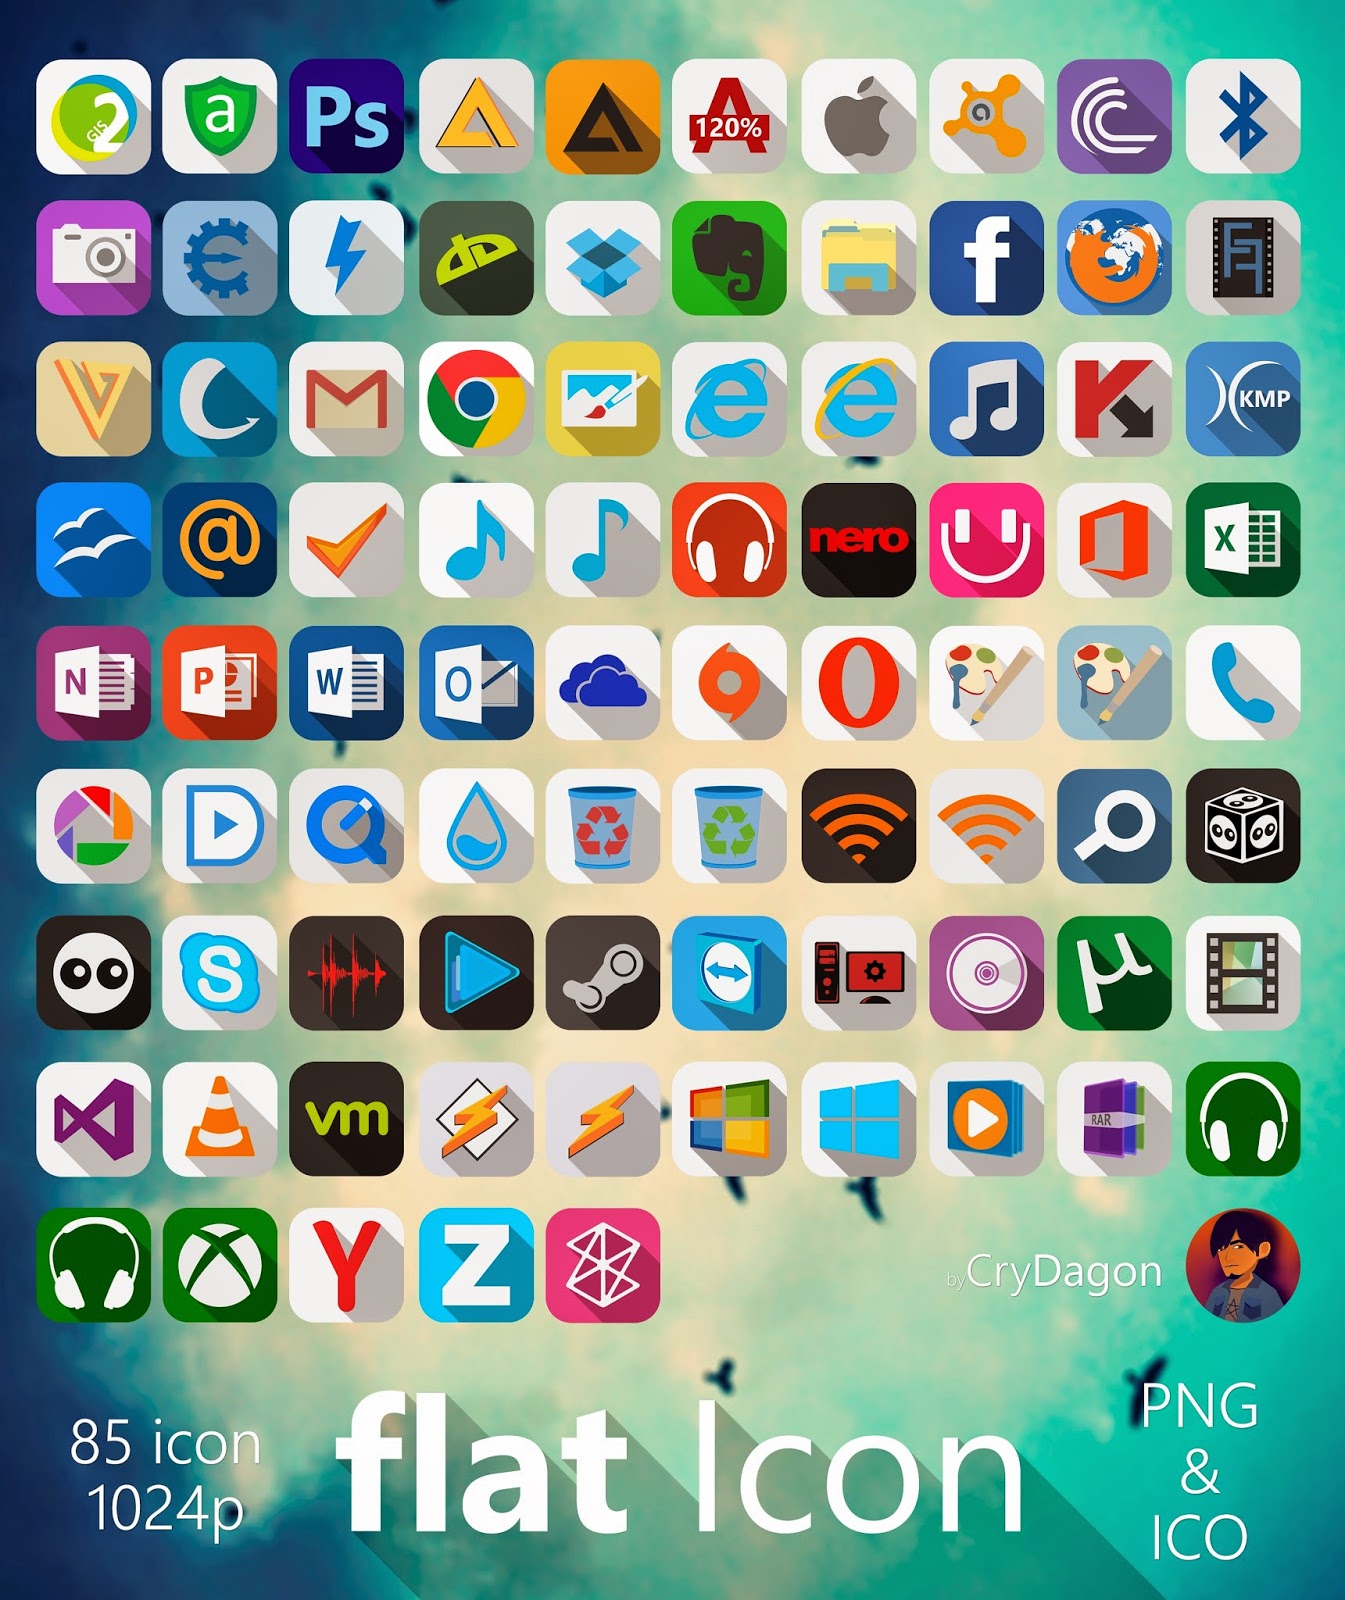 Metro UI Icon Set - 725 Icons by dAKirby309 